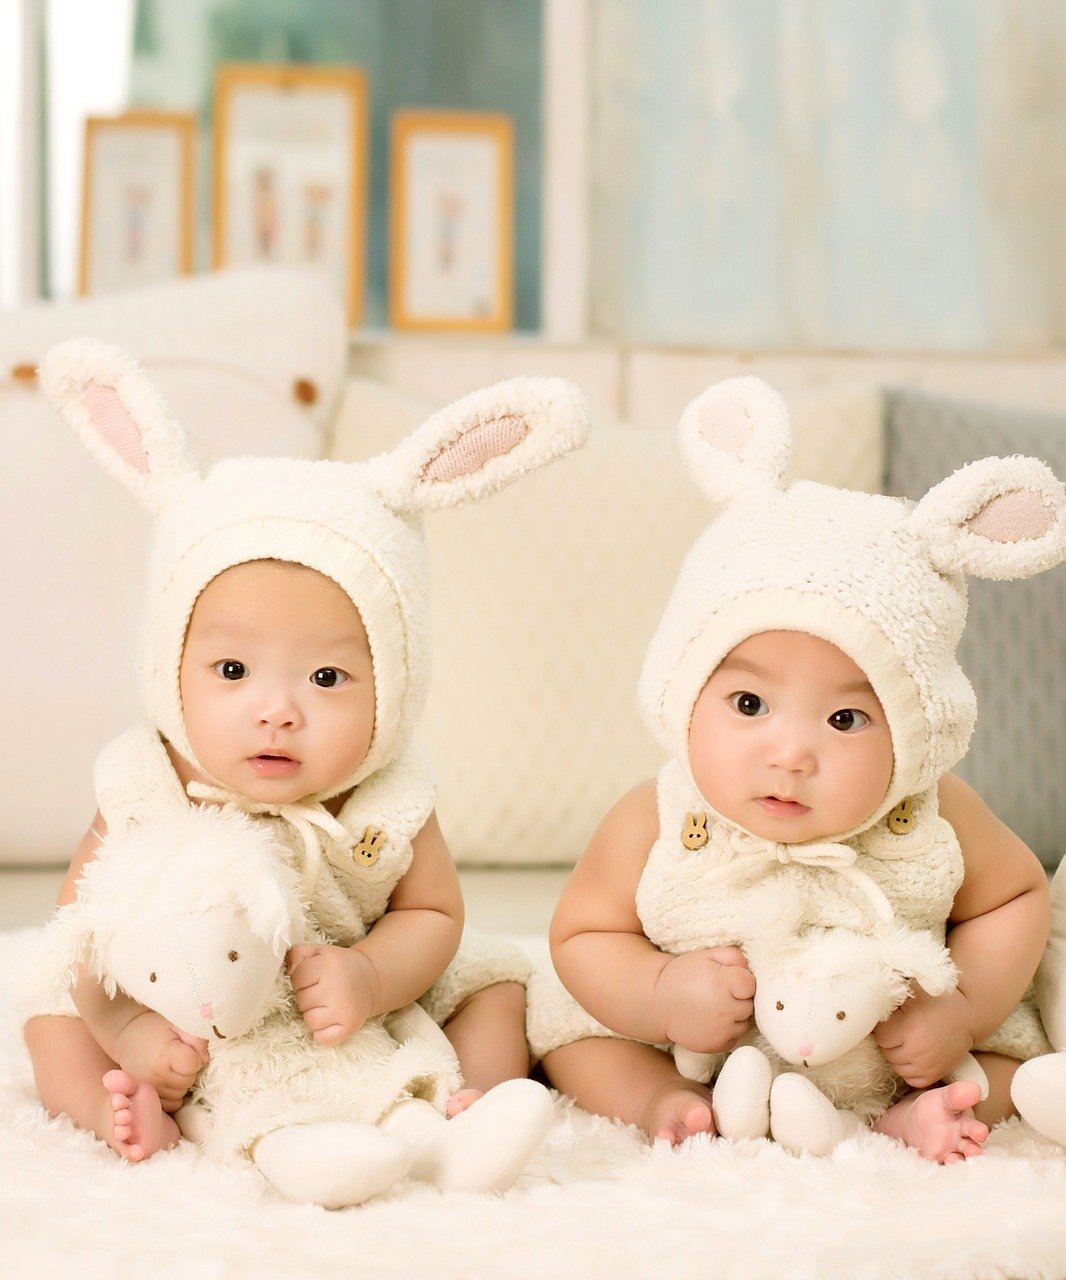 Zwei süße Babys in Hasenkostümen, die Stofftiere halten | Quelle: Pixabay/1035352